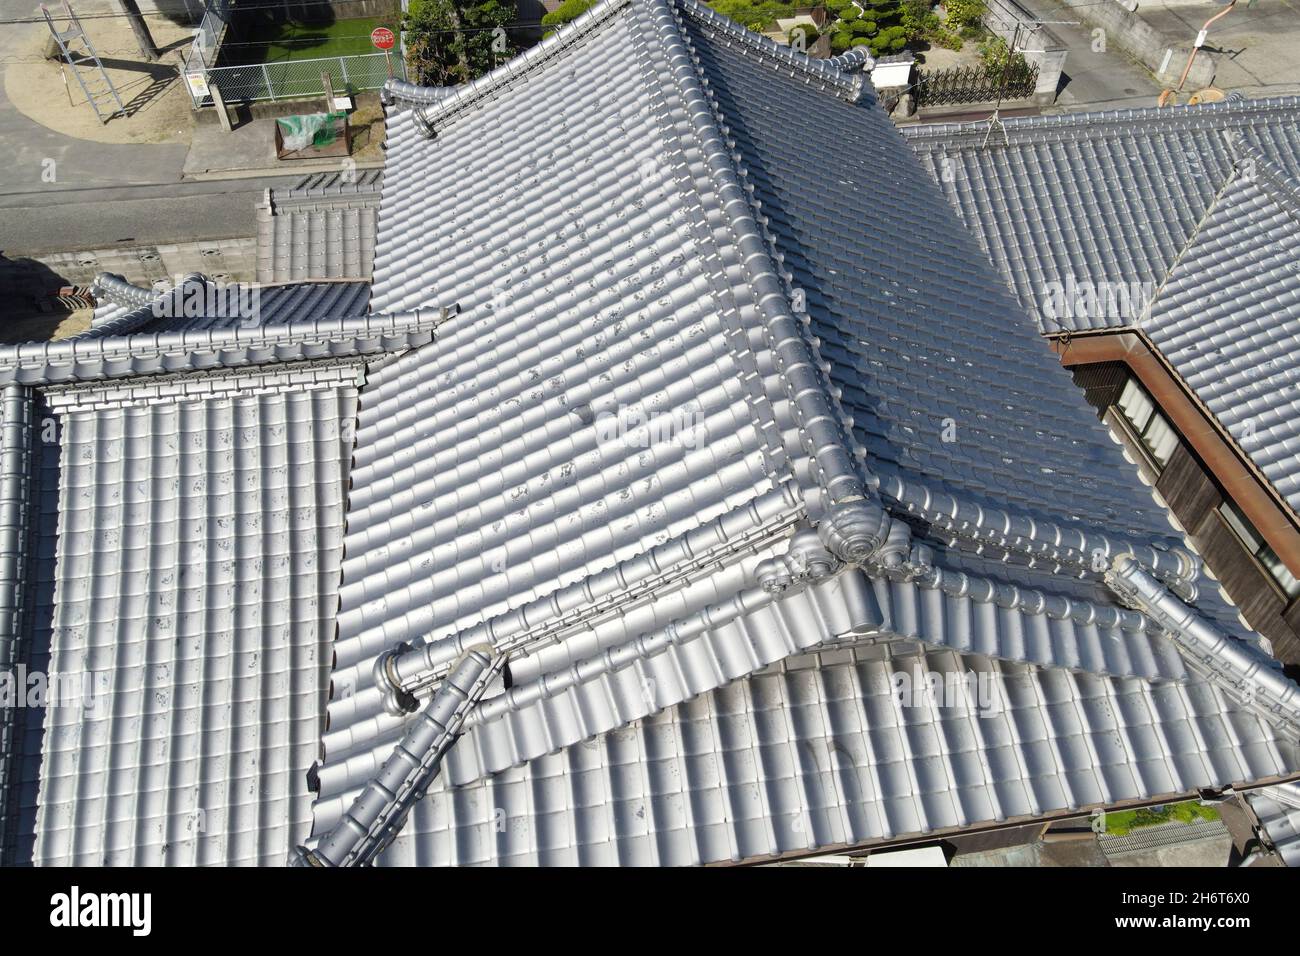 Japanische Hausdach Gebäude Architektur Außenfotografie von Drohne, Inspektion Haus Dach Stockfoto